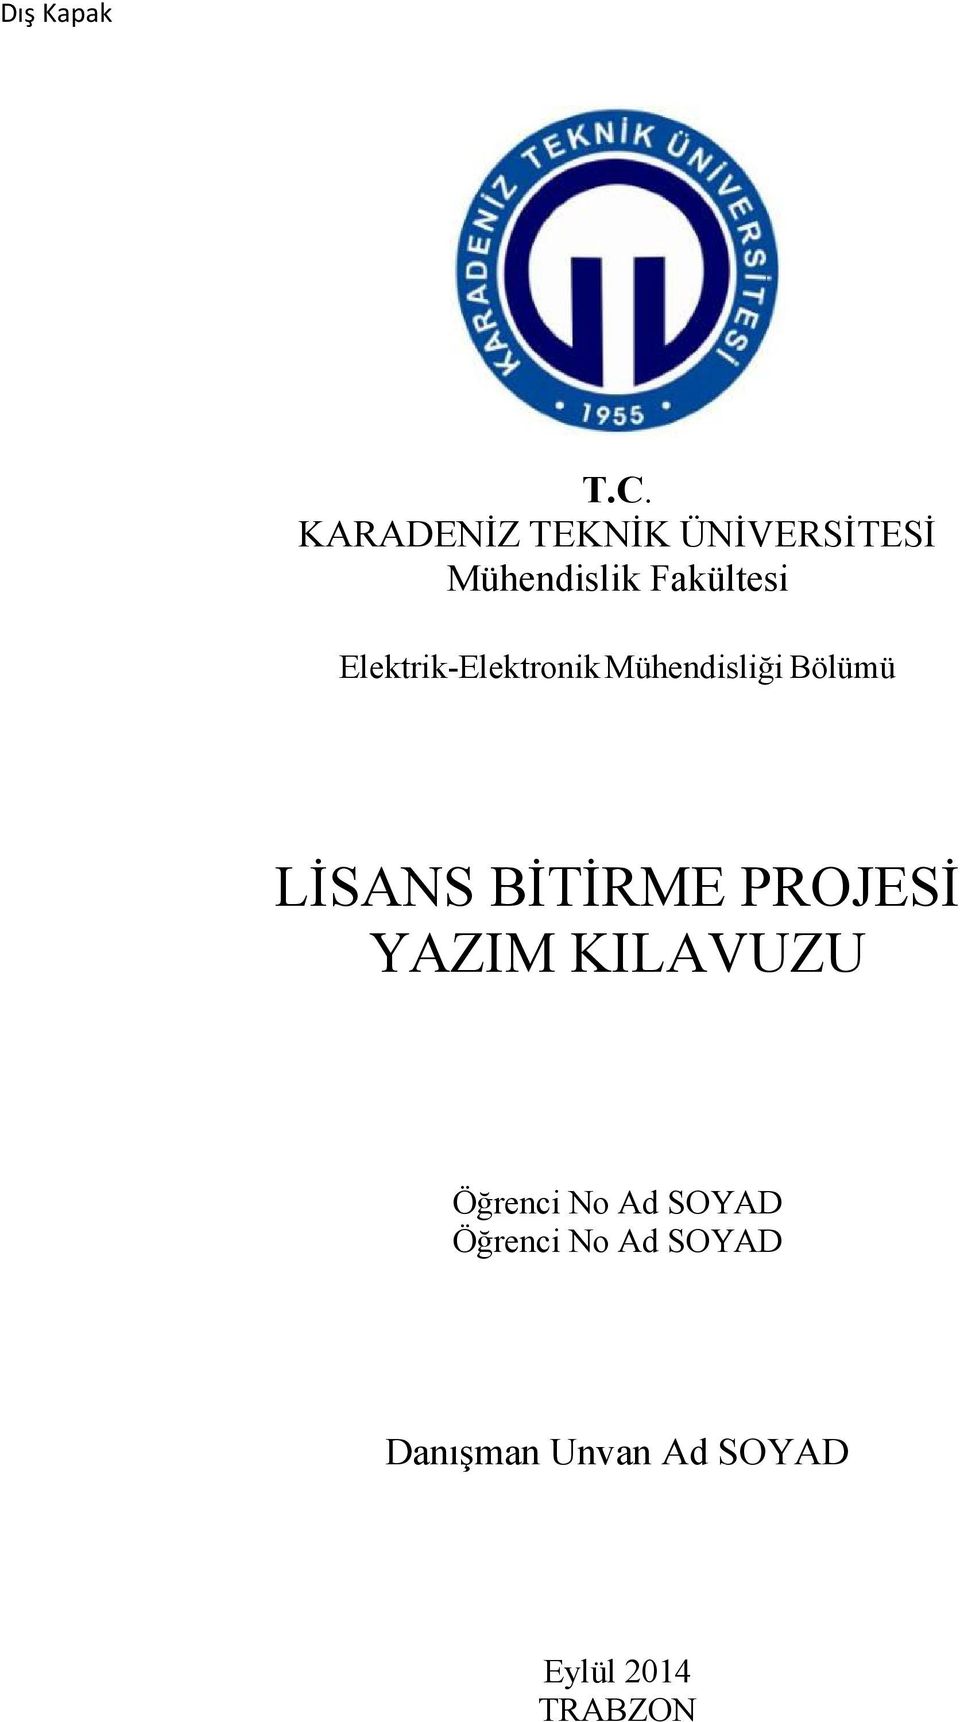 LĐSANS BĐTĐRME PROJESĐ YAZIM KILAVUZU - PDF Free Download